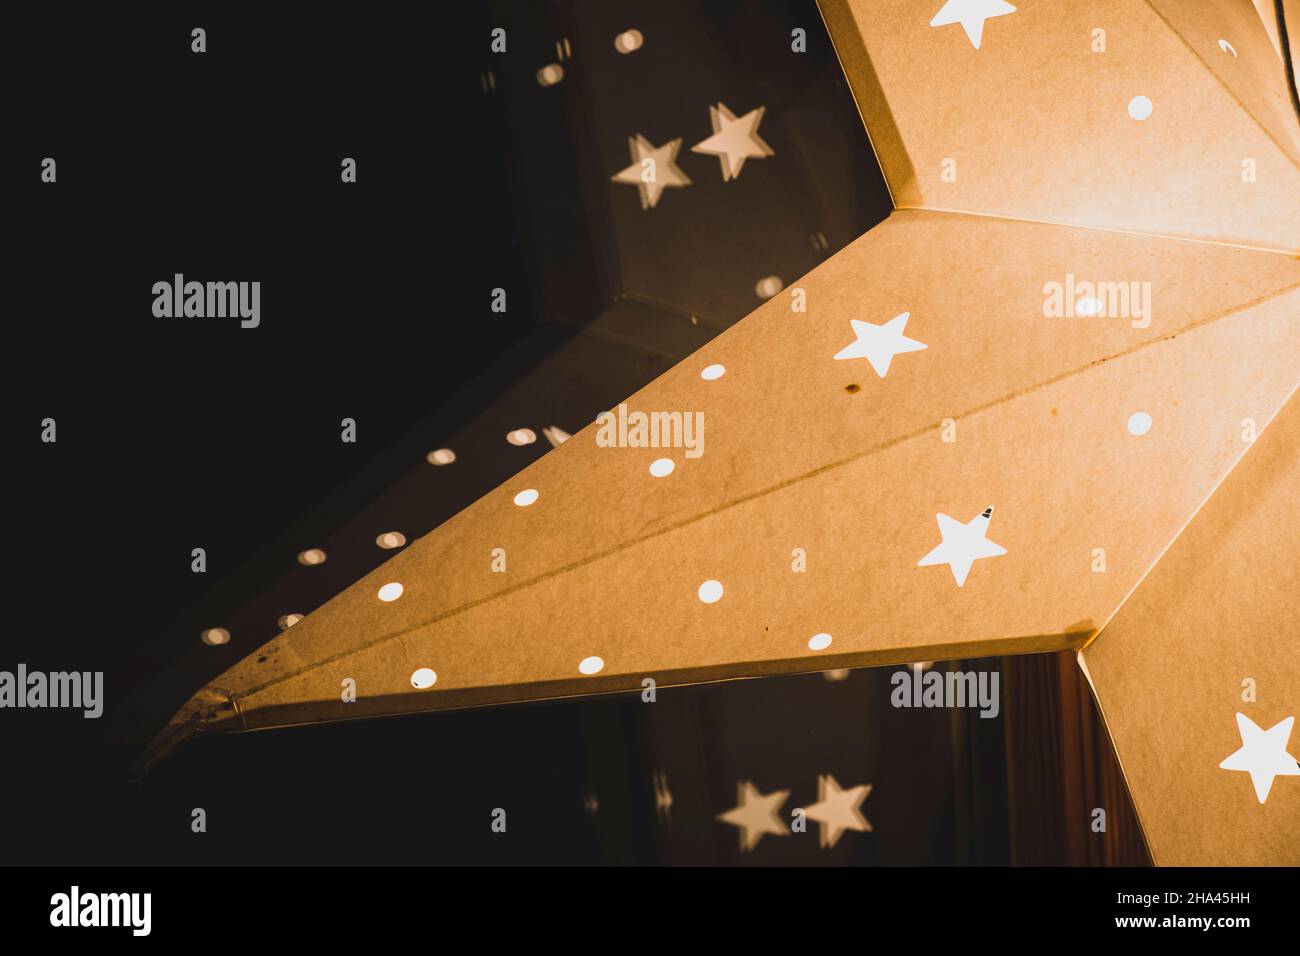 Vacances saison étoile lumineuse décoration sombre lumière ambiance Banque D'Images